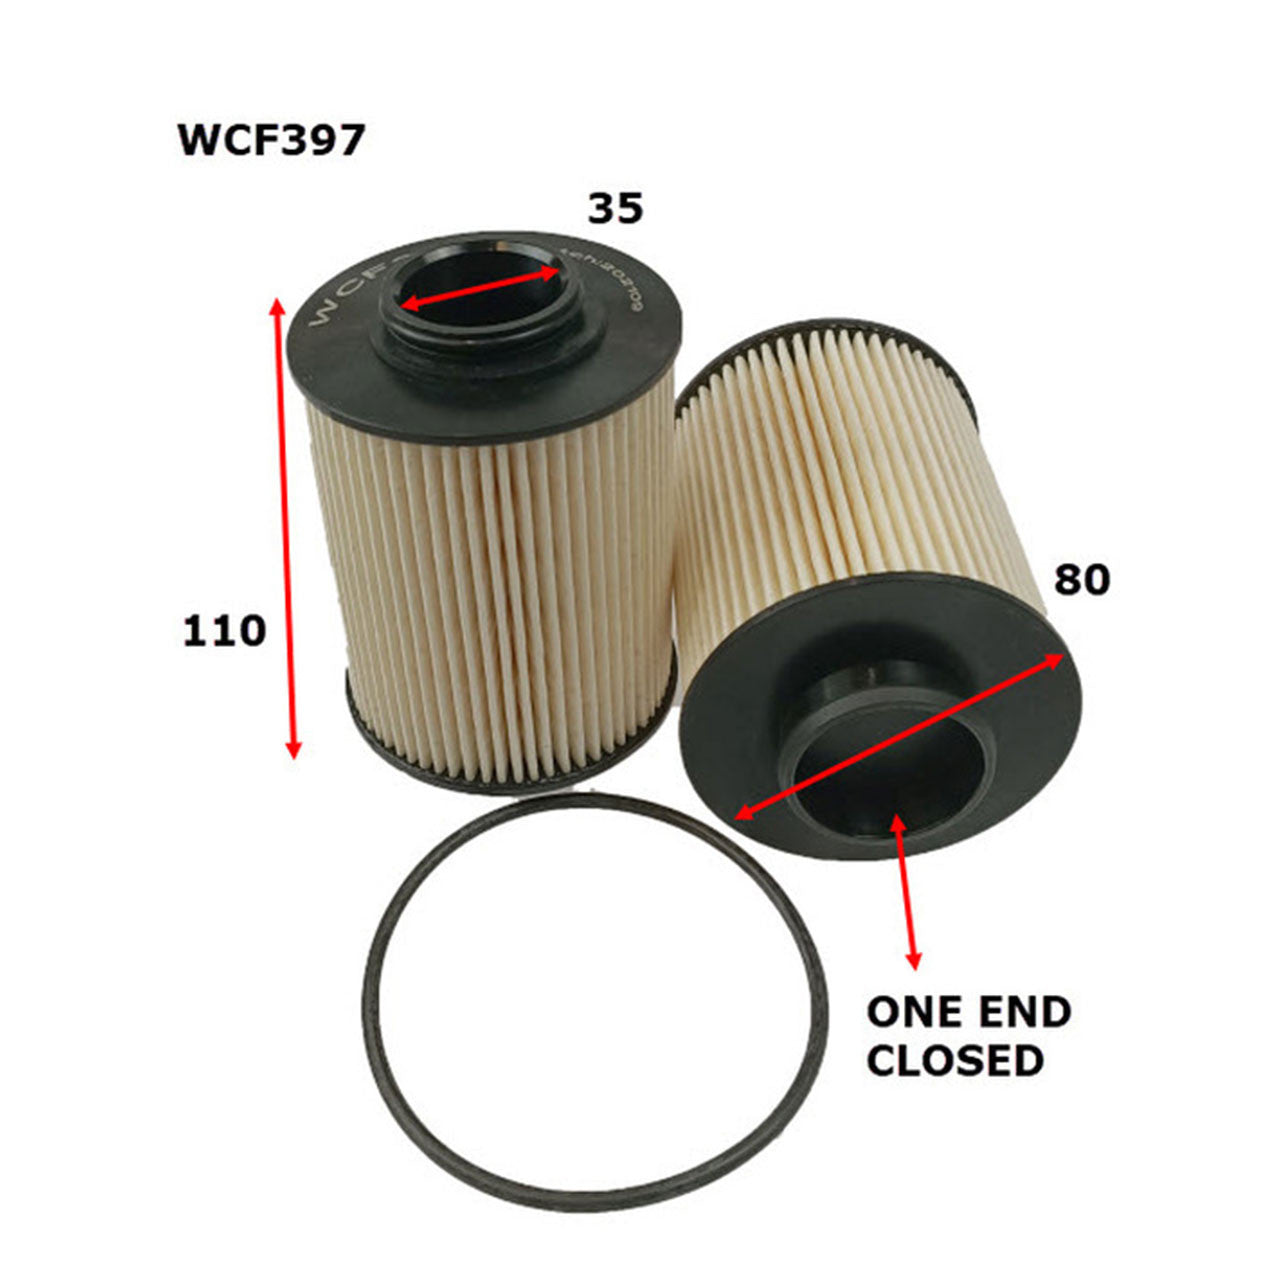 WCF397 Wesfil Cooper Diesel Fuel Filter (Cross Ref: 1111402XED95)